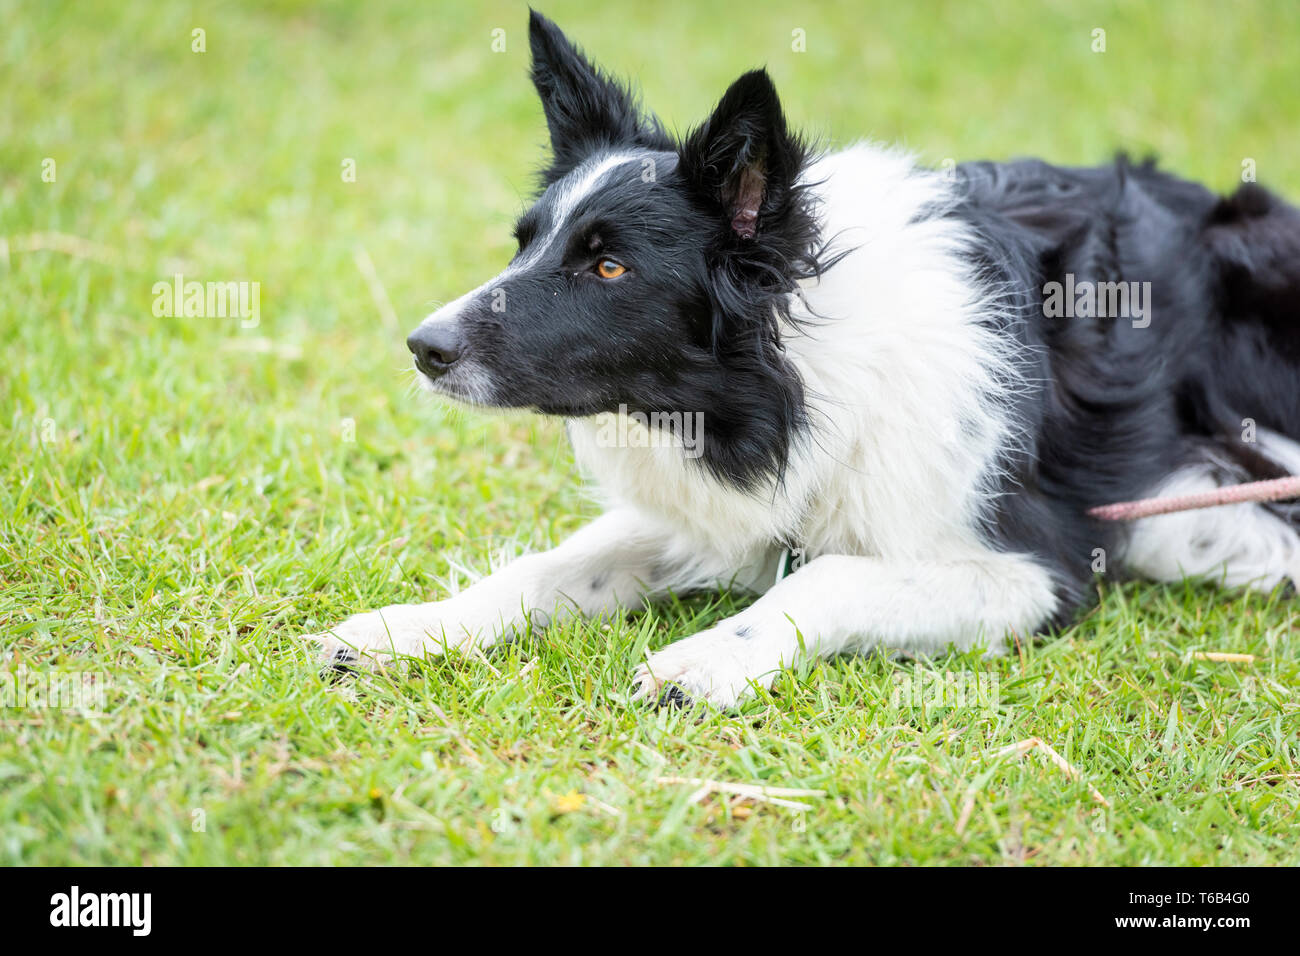 Eine schwarze und weiße Collie schaf Hund suchen und Alarm Stockfotografie  - Alamy